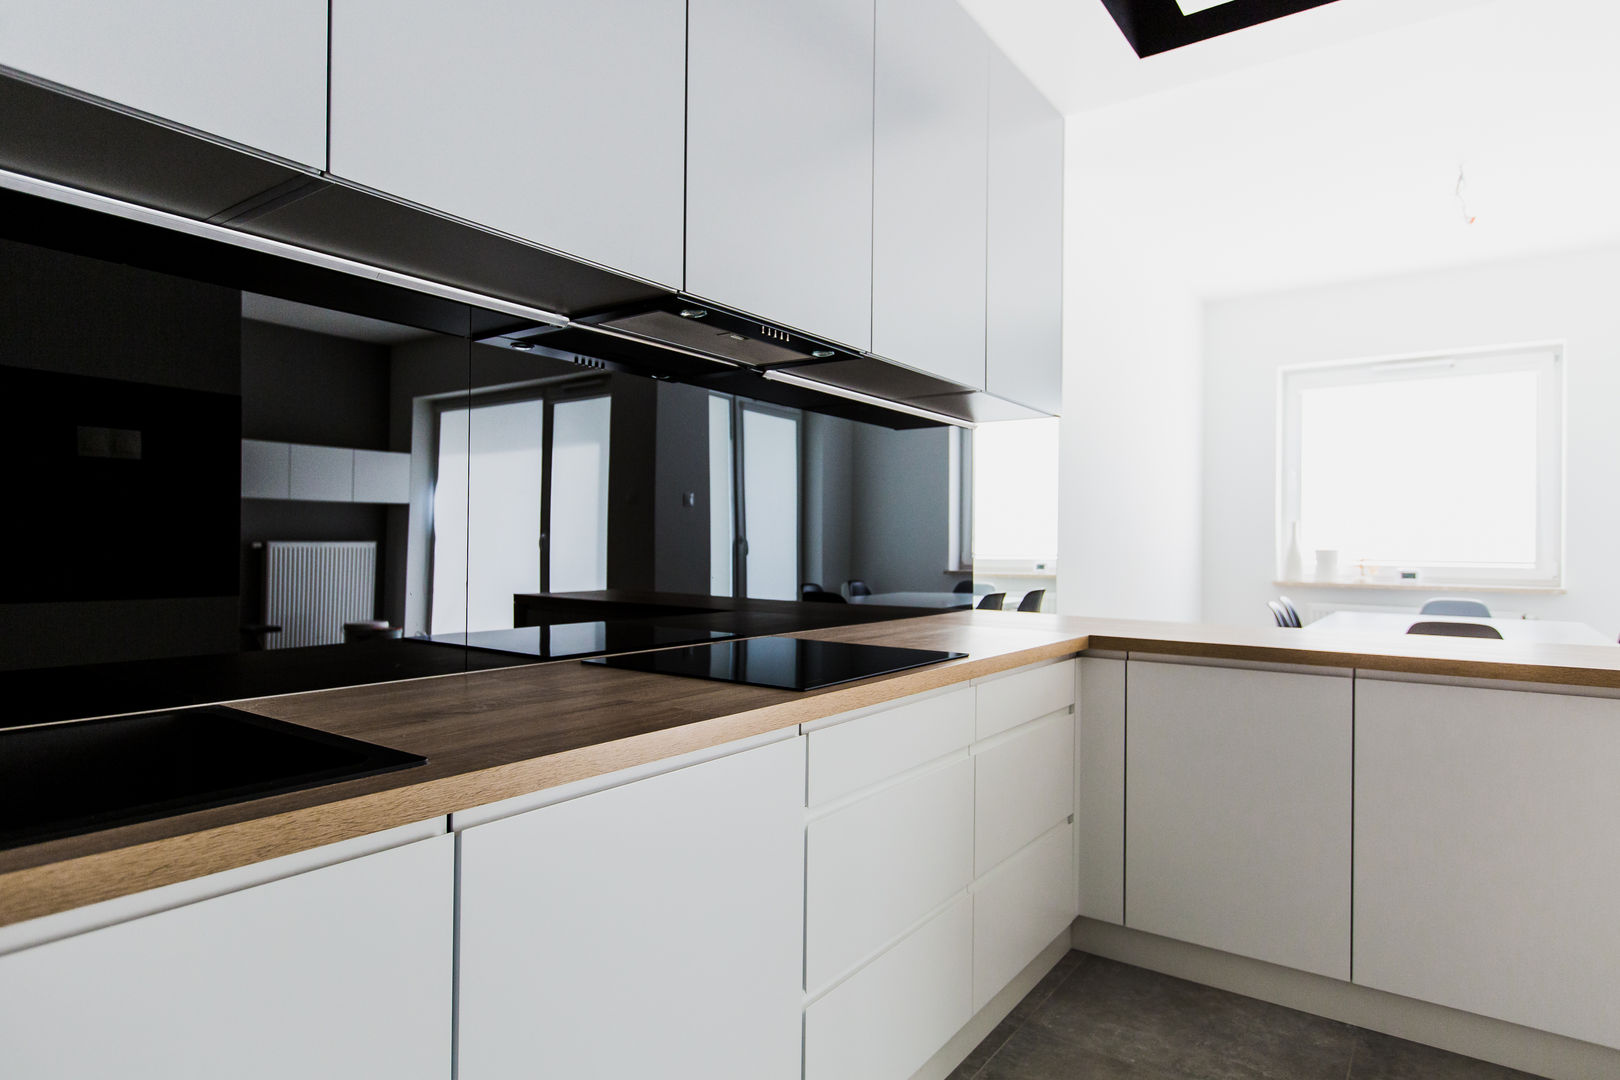 Wnętrze mieszkalne nowoczesne i pełne ciepła, ADM MEBLE ADM MEBLE Modern kitchen MDF Cabinets & shelves